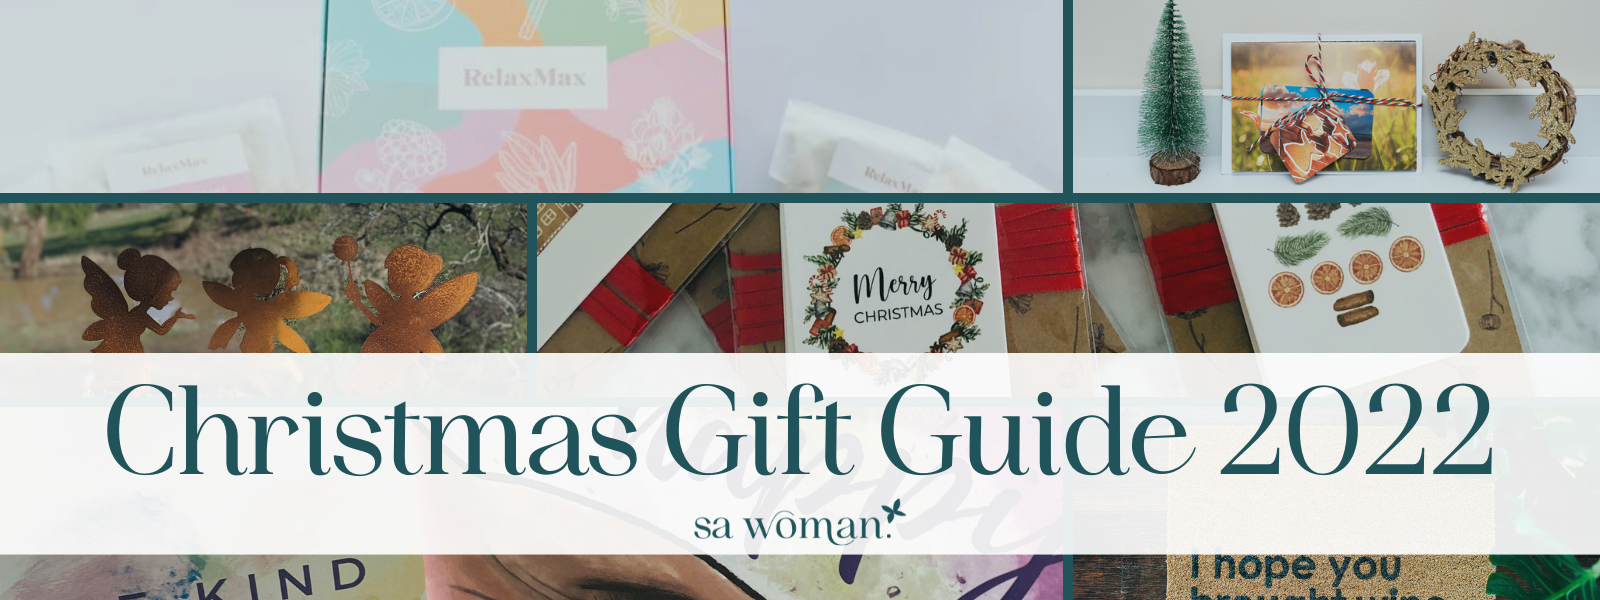 SAW Christmas Gift Guide 2022